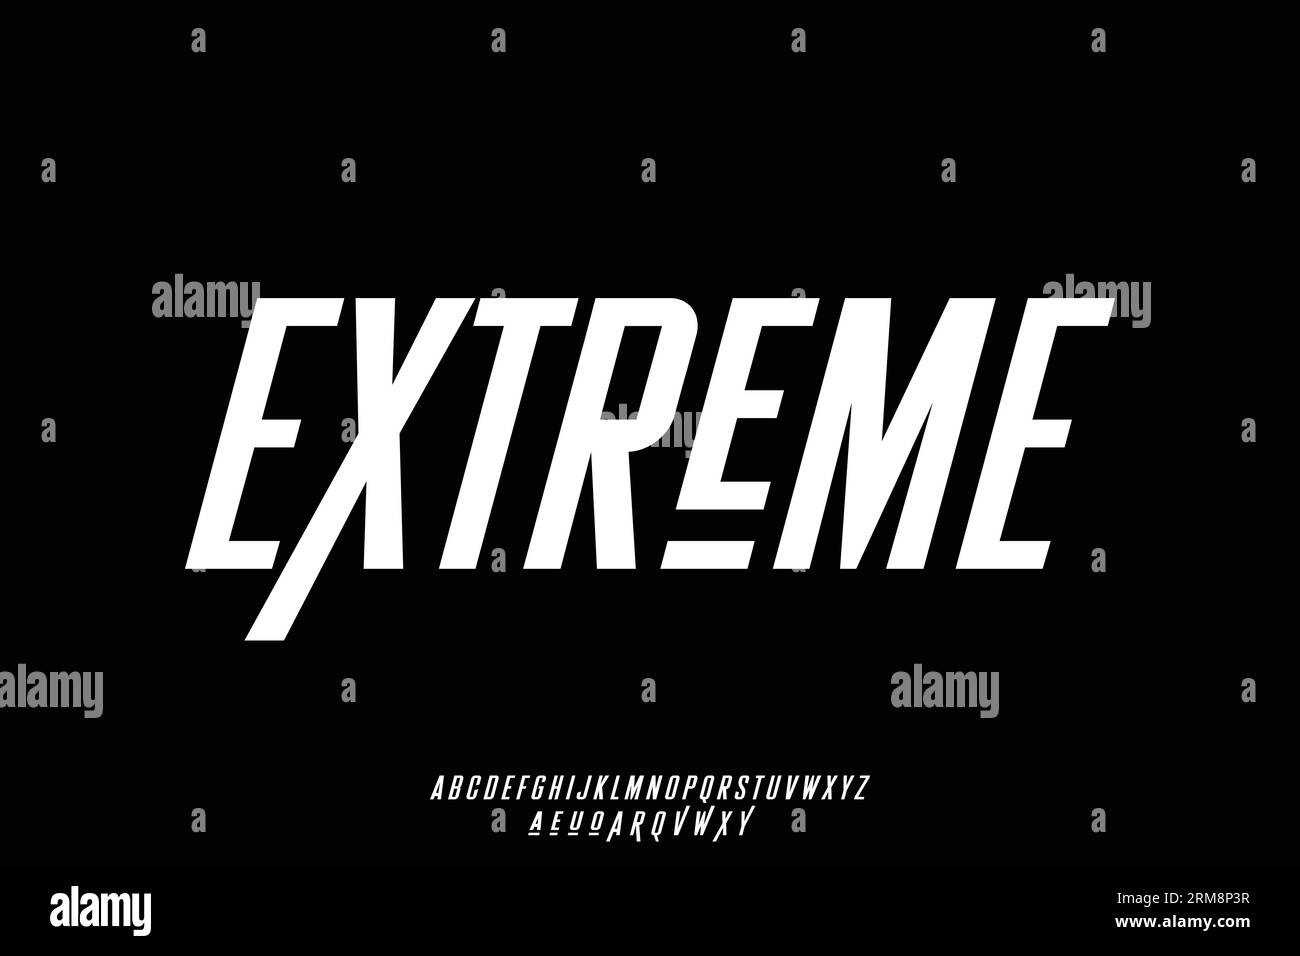 Extreme Sports – Schriftartenvektor mit kondensiertem Alphabet. Moderner, schräger Typographiestil mit Wechsel Stock Vektor